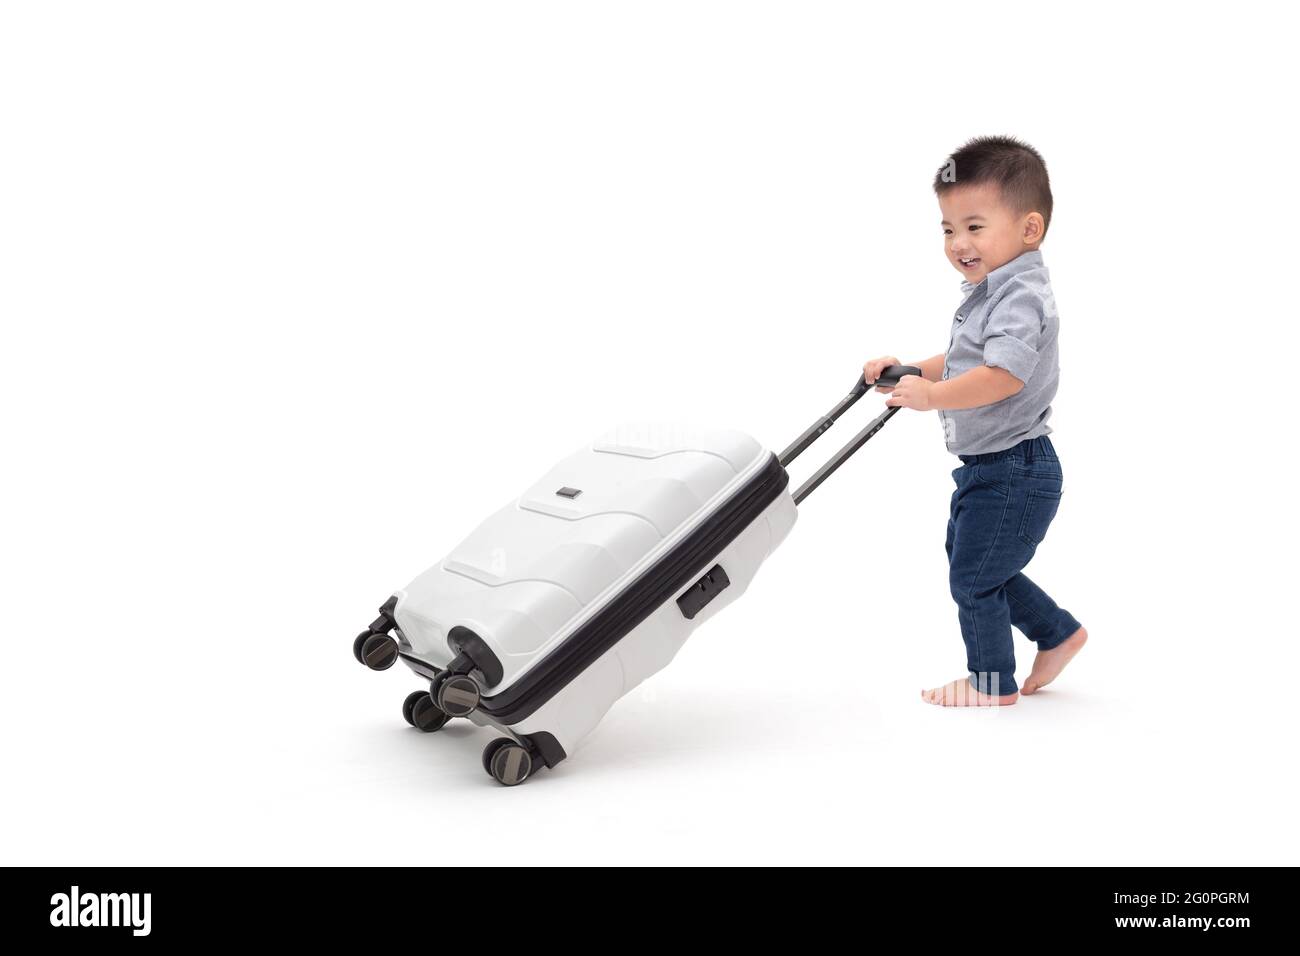 Gerne Asiatische baby boy Schiebetüren Gepäck Reisetasche oder Koffer auf weißem Hintergrund, Reisen und neue Abenteuer Familie Reise für Kind Beifahrerseite Stockfoto